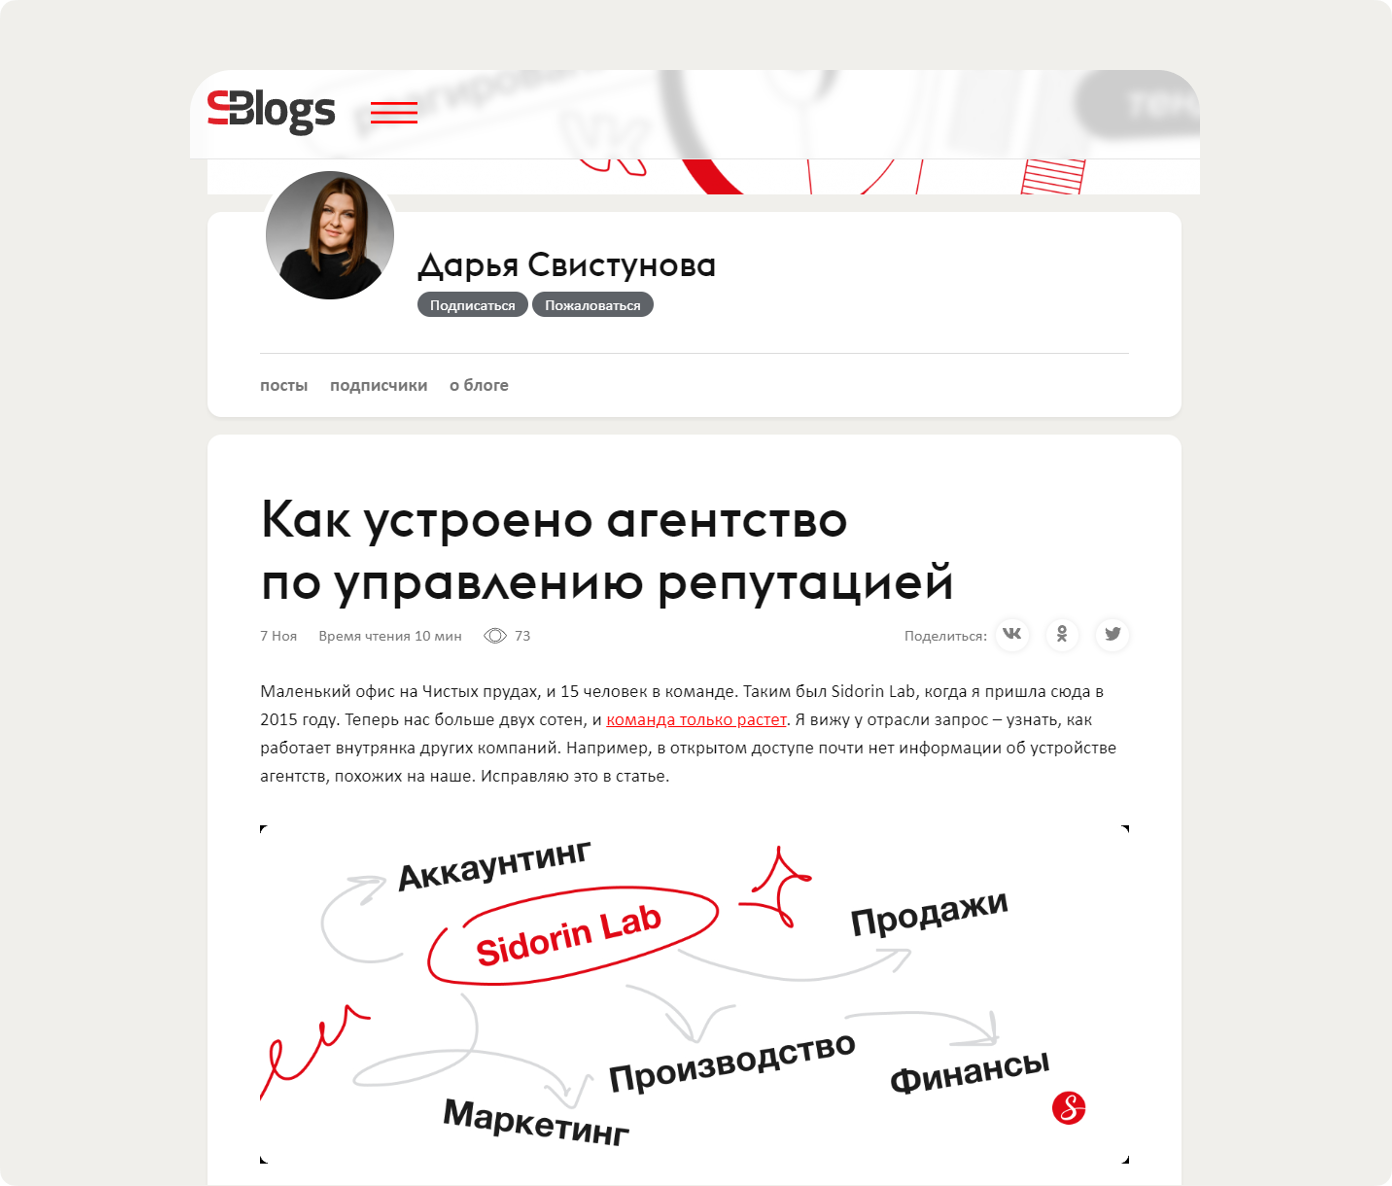 Операционный директор Sidorin Lab Дарья Свистунова рассказывает, как устроена работа в агентстве в рамках статьи на портале Sostav.ru